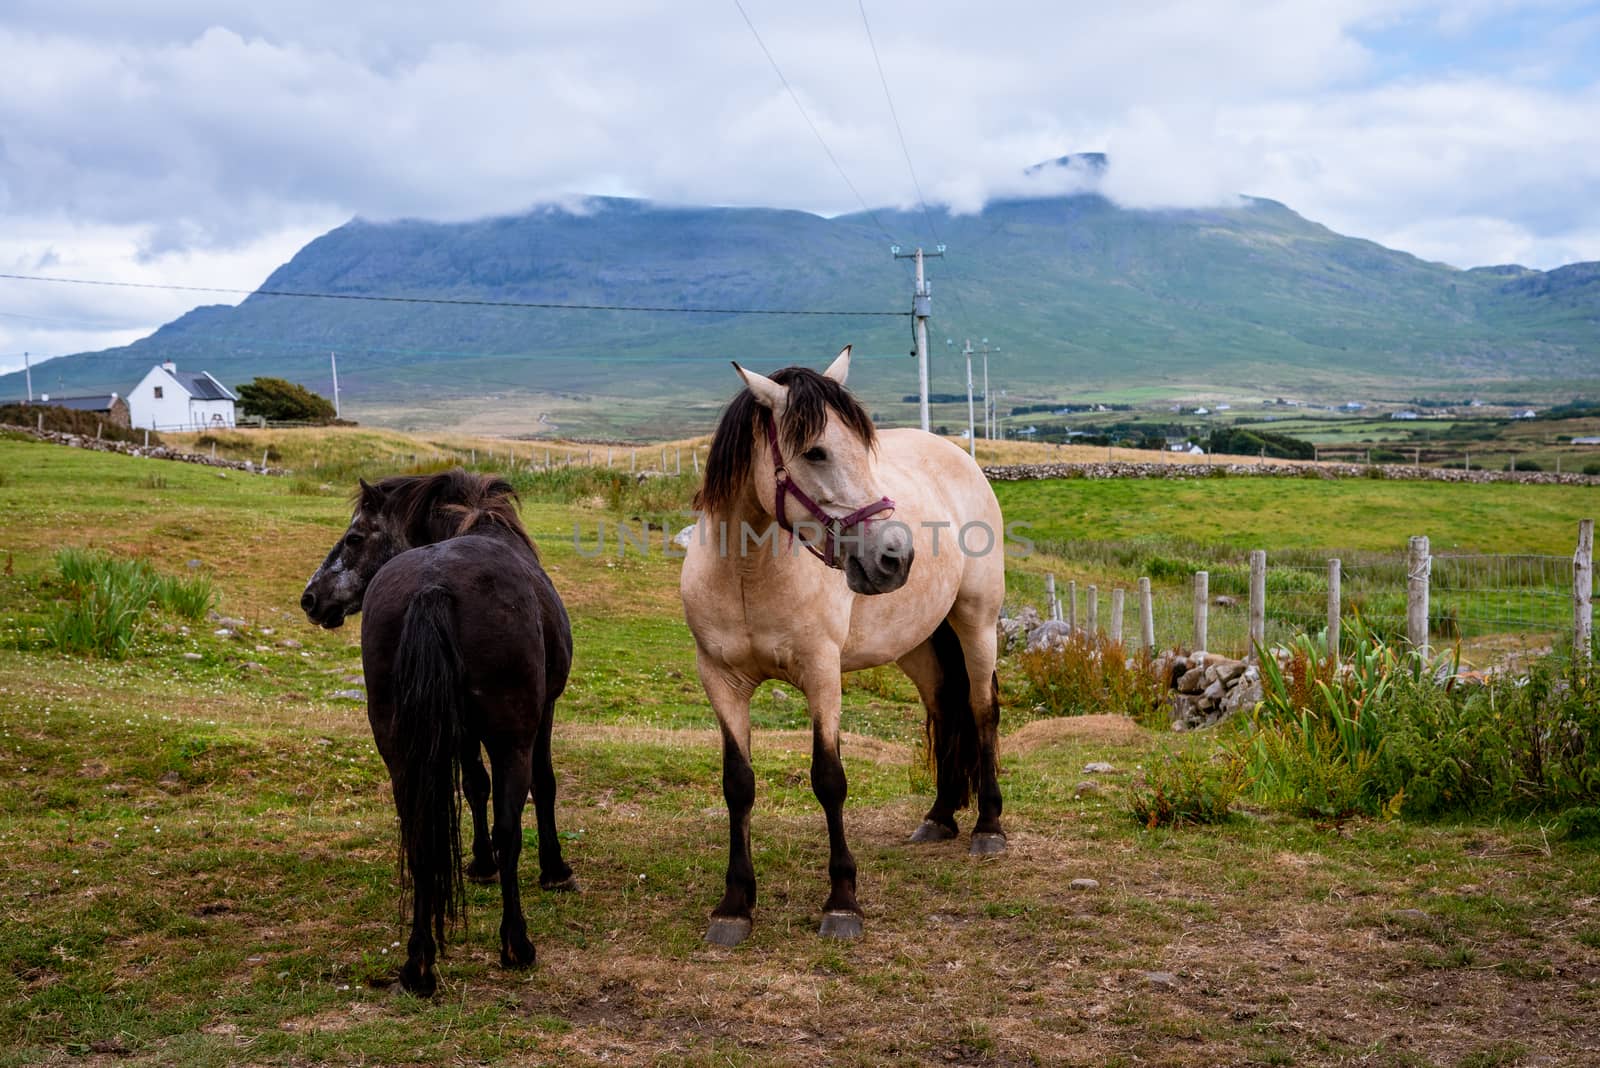 Horses on a farm in county Mayo, near the coast.